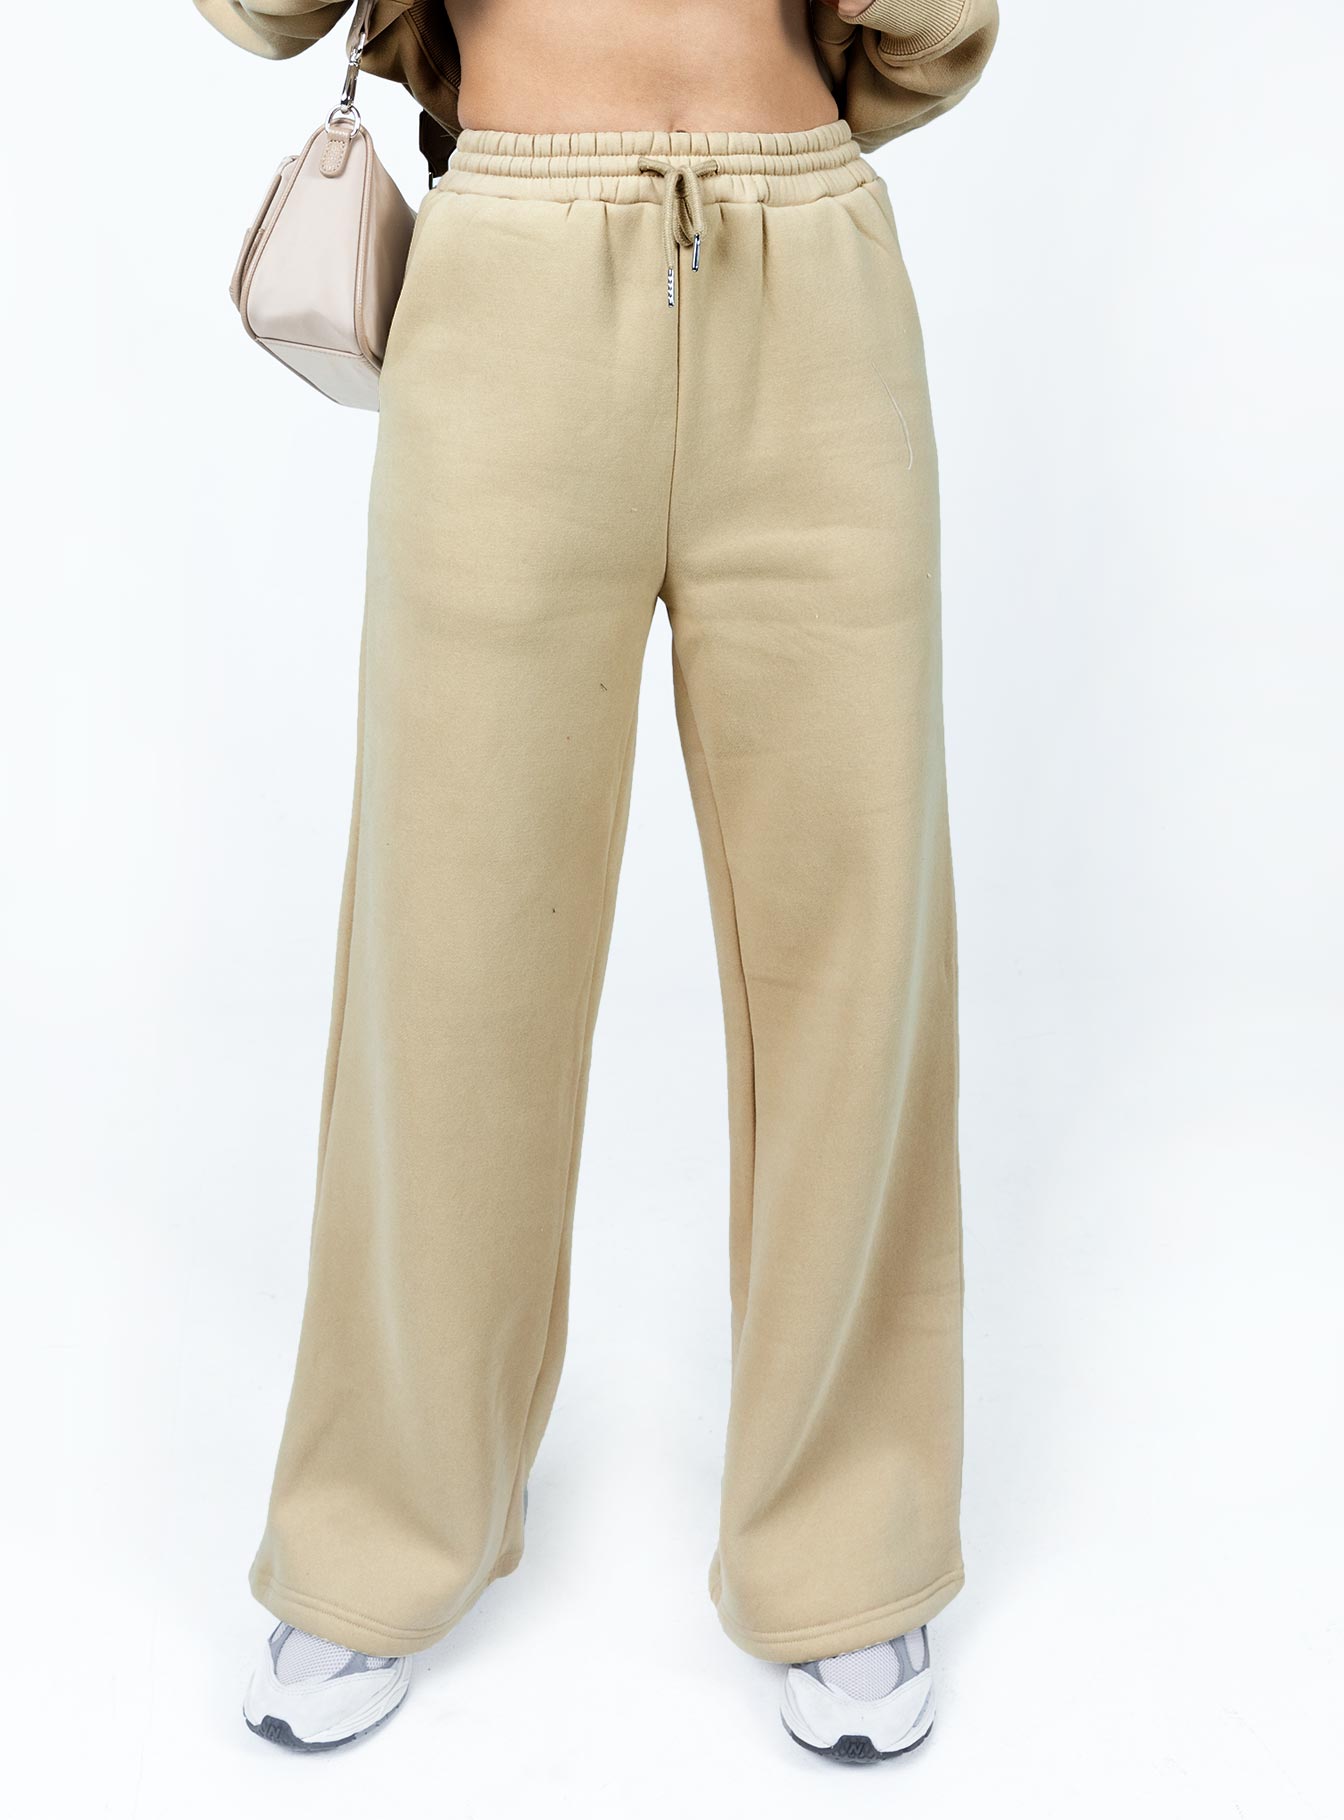 KROST X FILA Limited Edition Men's Track Pants Straight Sweatpants  $160 NEW XL | eBay